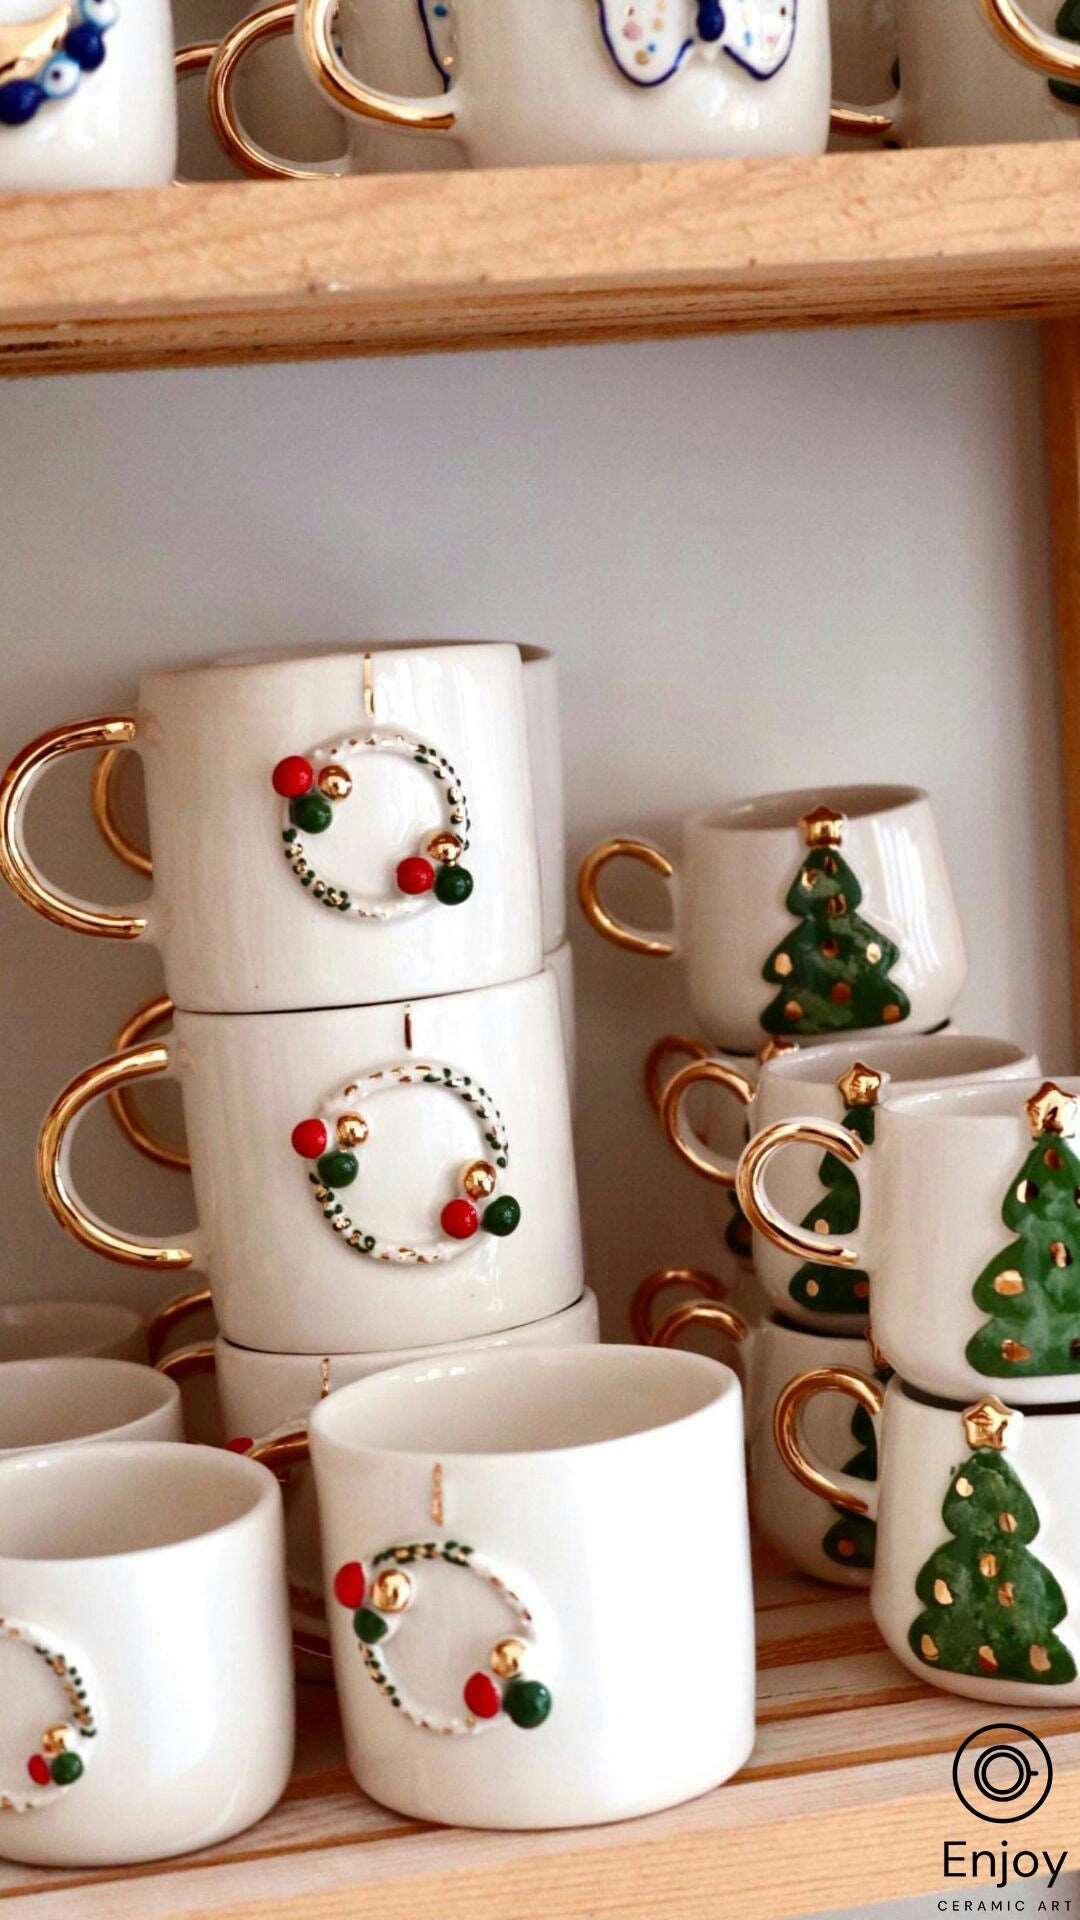 Handcrafted Christmas Wreath Espresso Cup & Saucer Set, 5.4 oz - Ceramic Santa Espresso Mugs, Holiday-Themed Espresso Coffee Cups